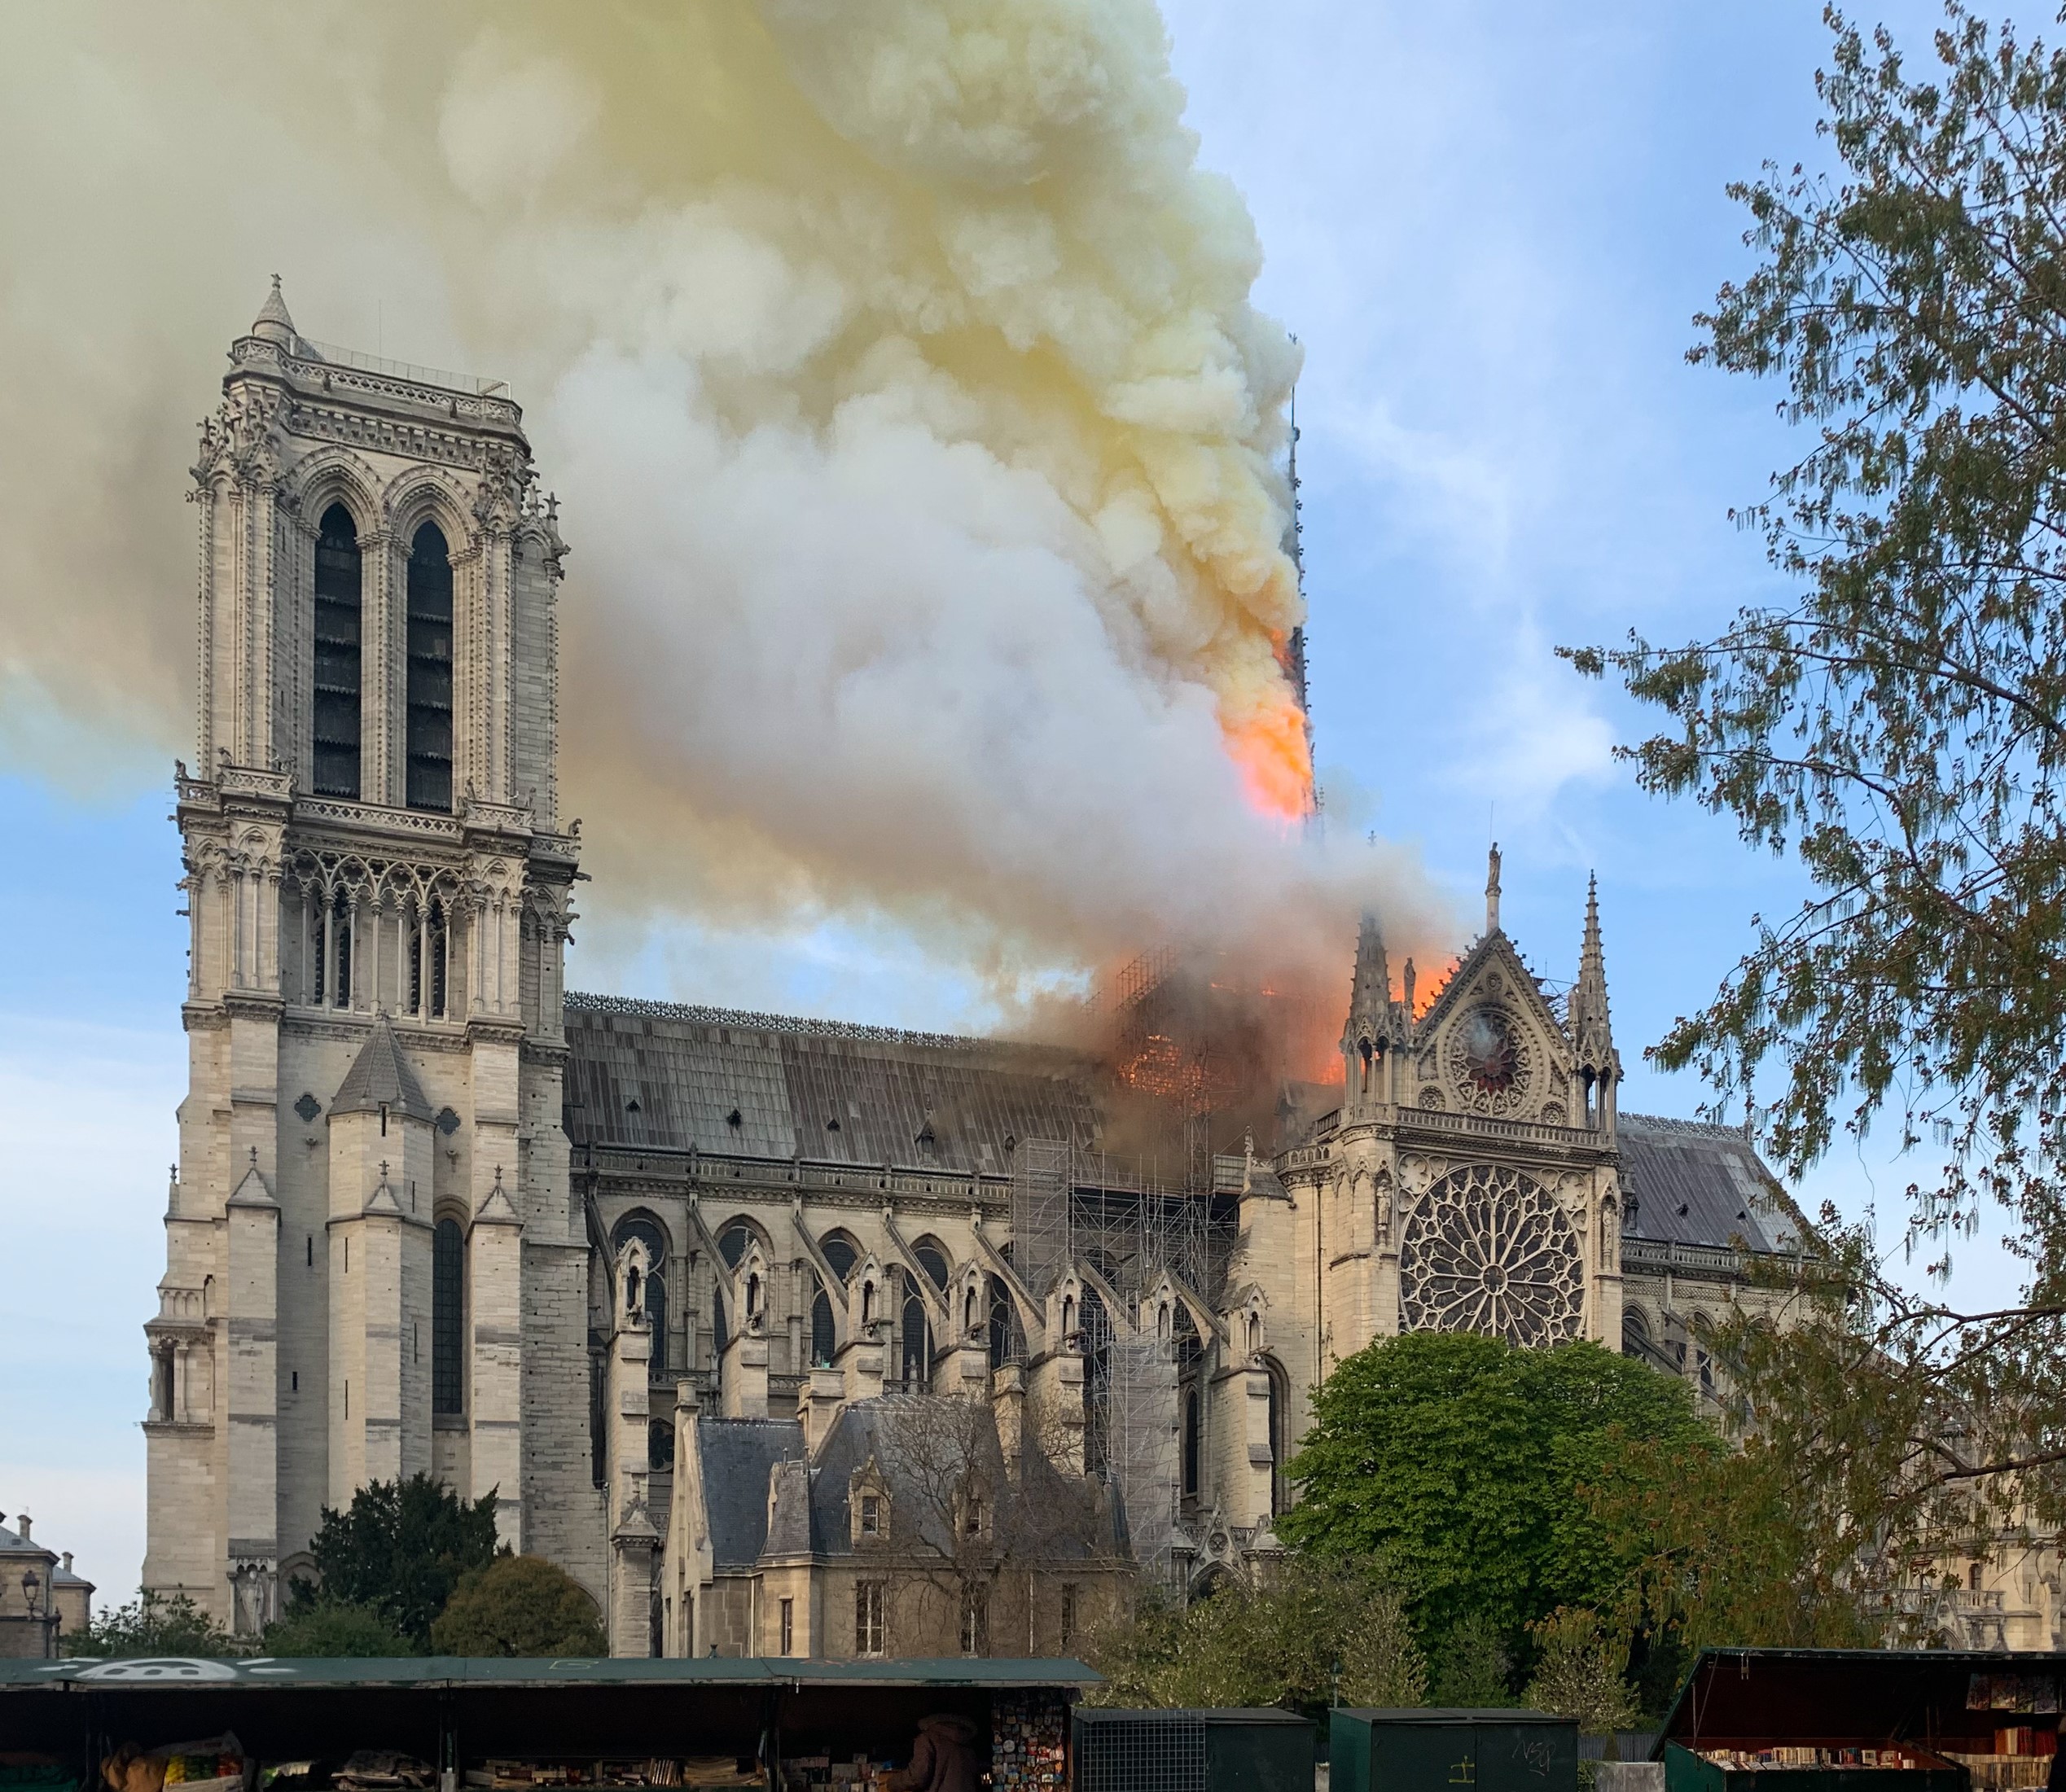 Noi informații despre sicriele de plumb ascunse sub podeaua Catedralei Notre Dame